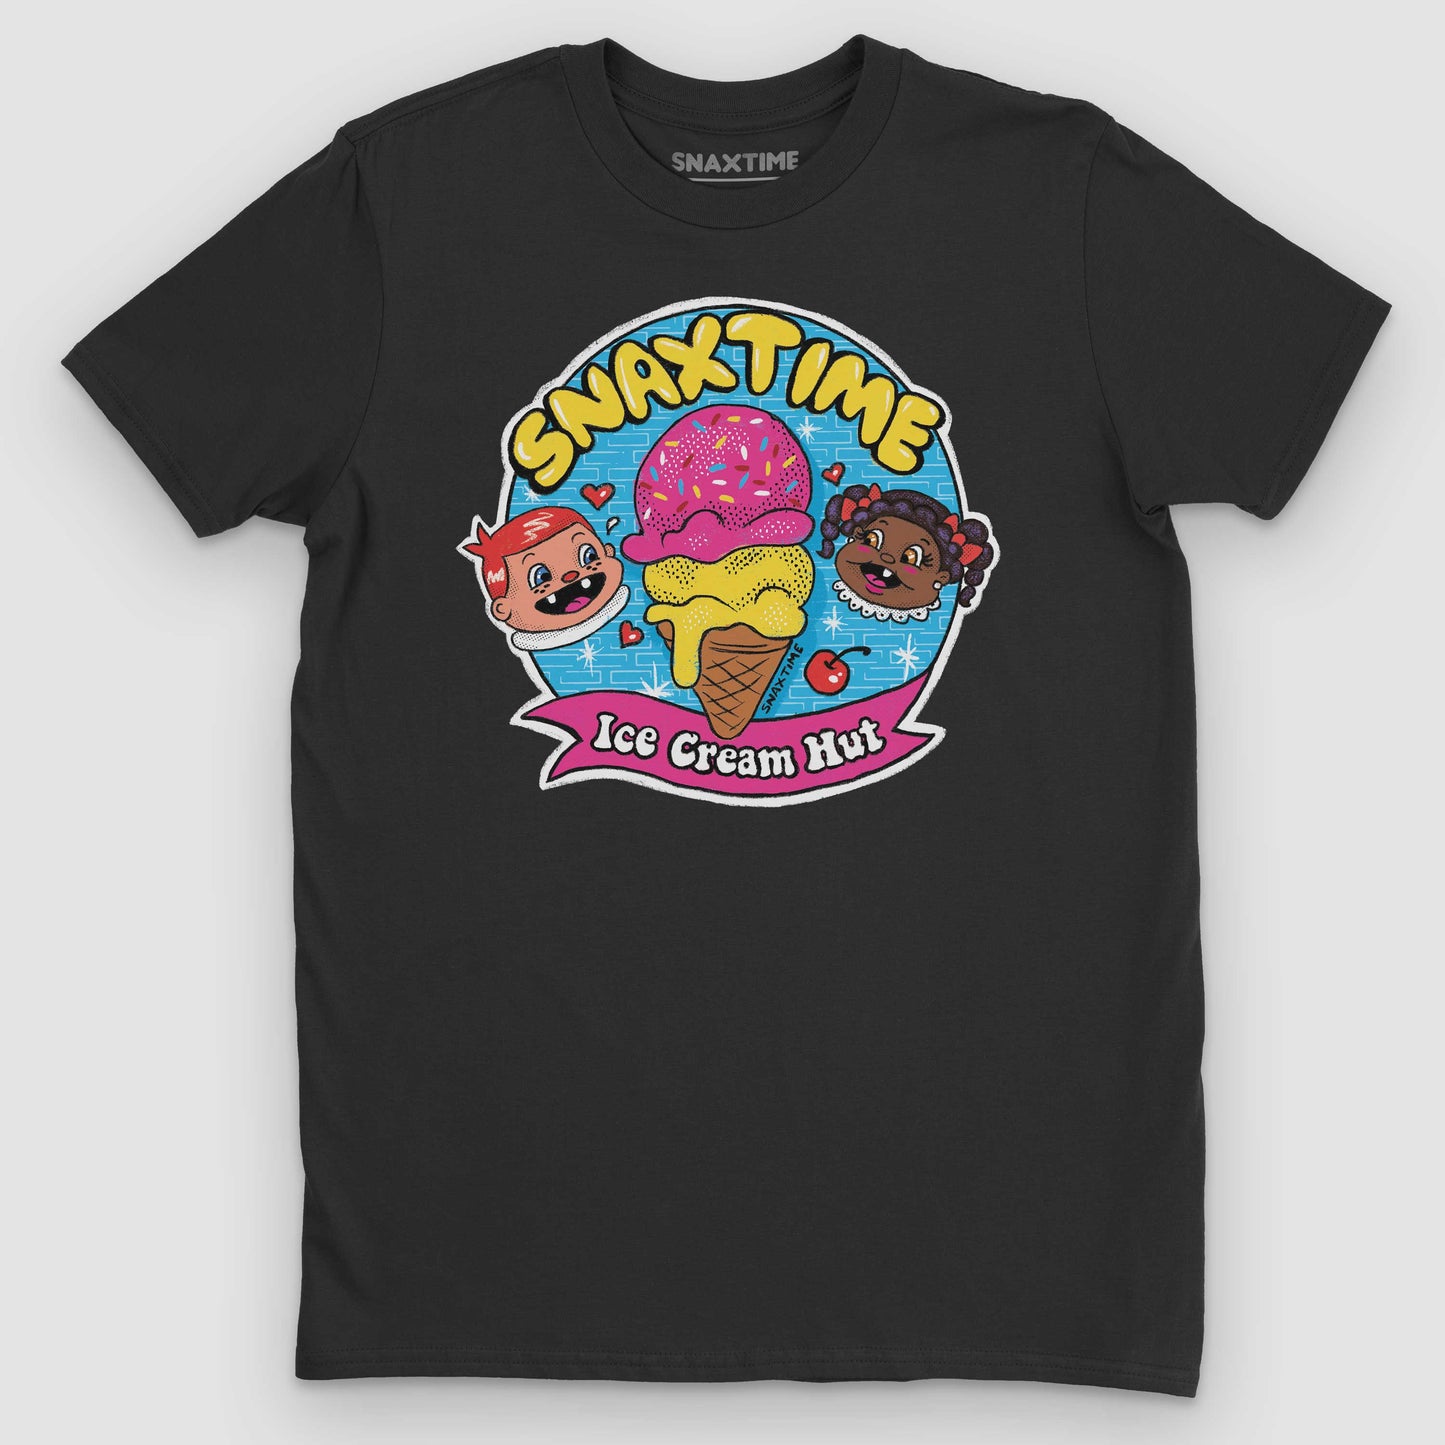 Black Snaxtime Ice Cream Hut Graphic T-Shirt by Snaxtime